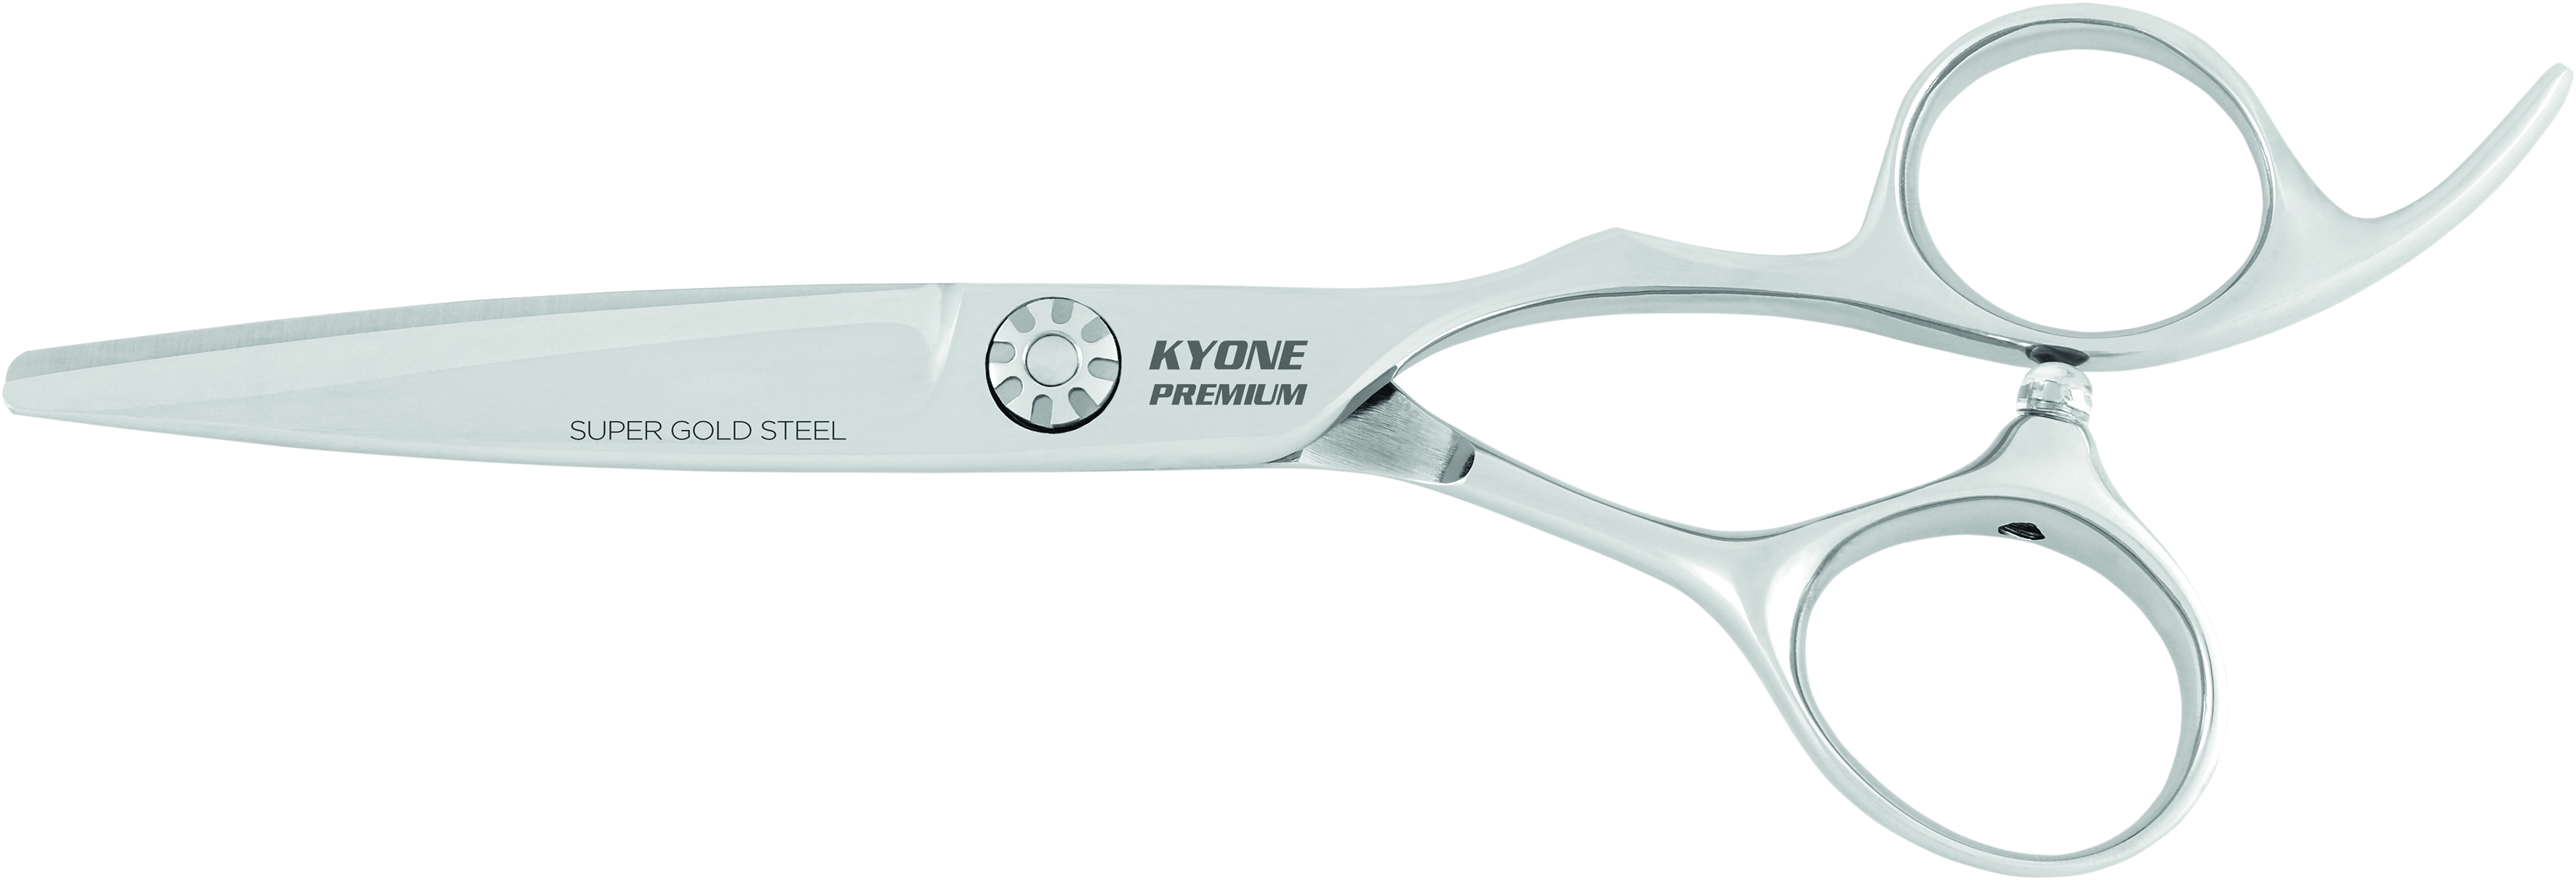 Kyone Premium Haarschneideschere 3300